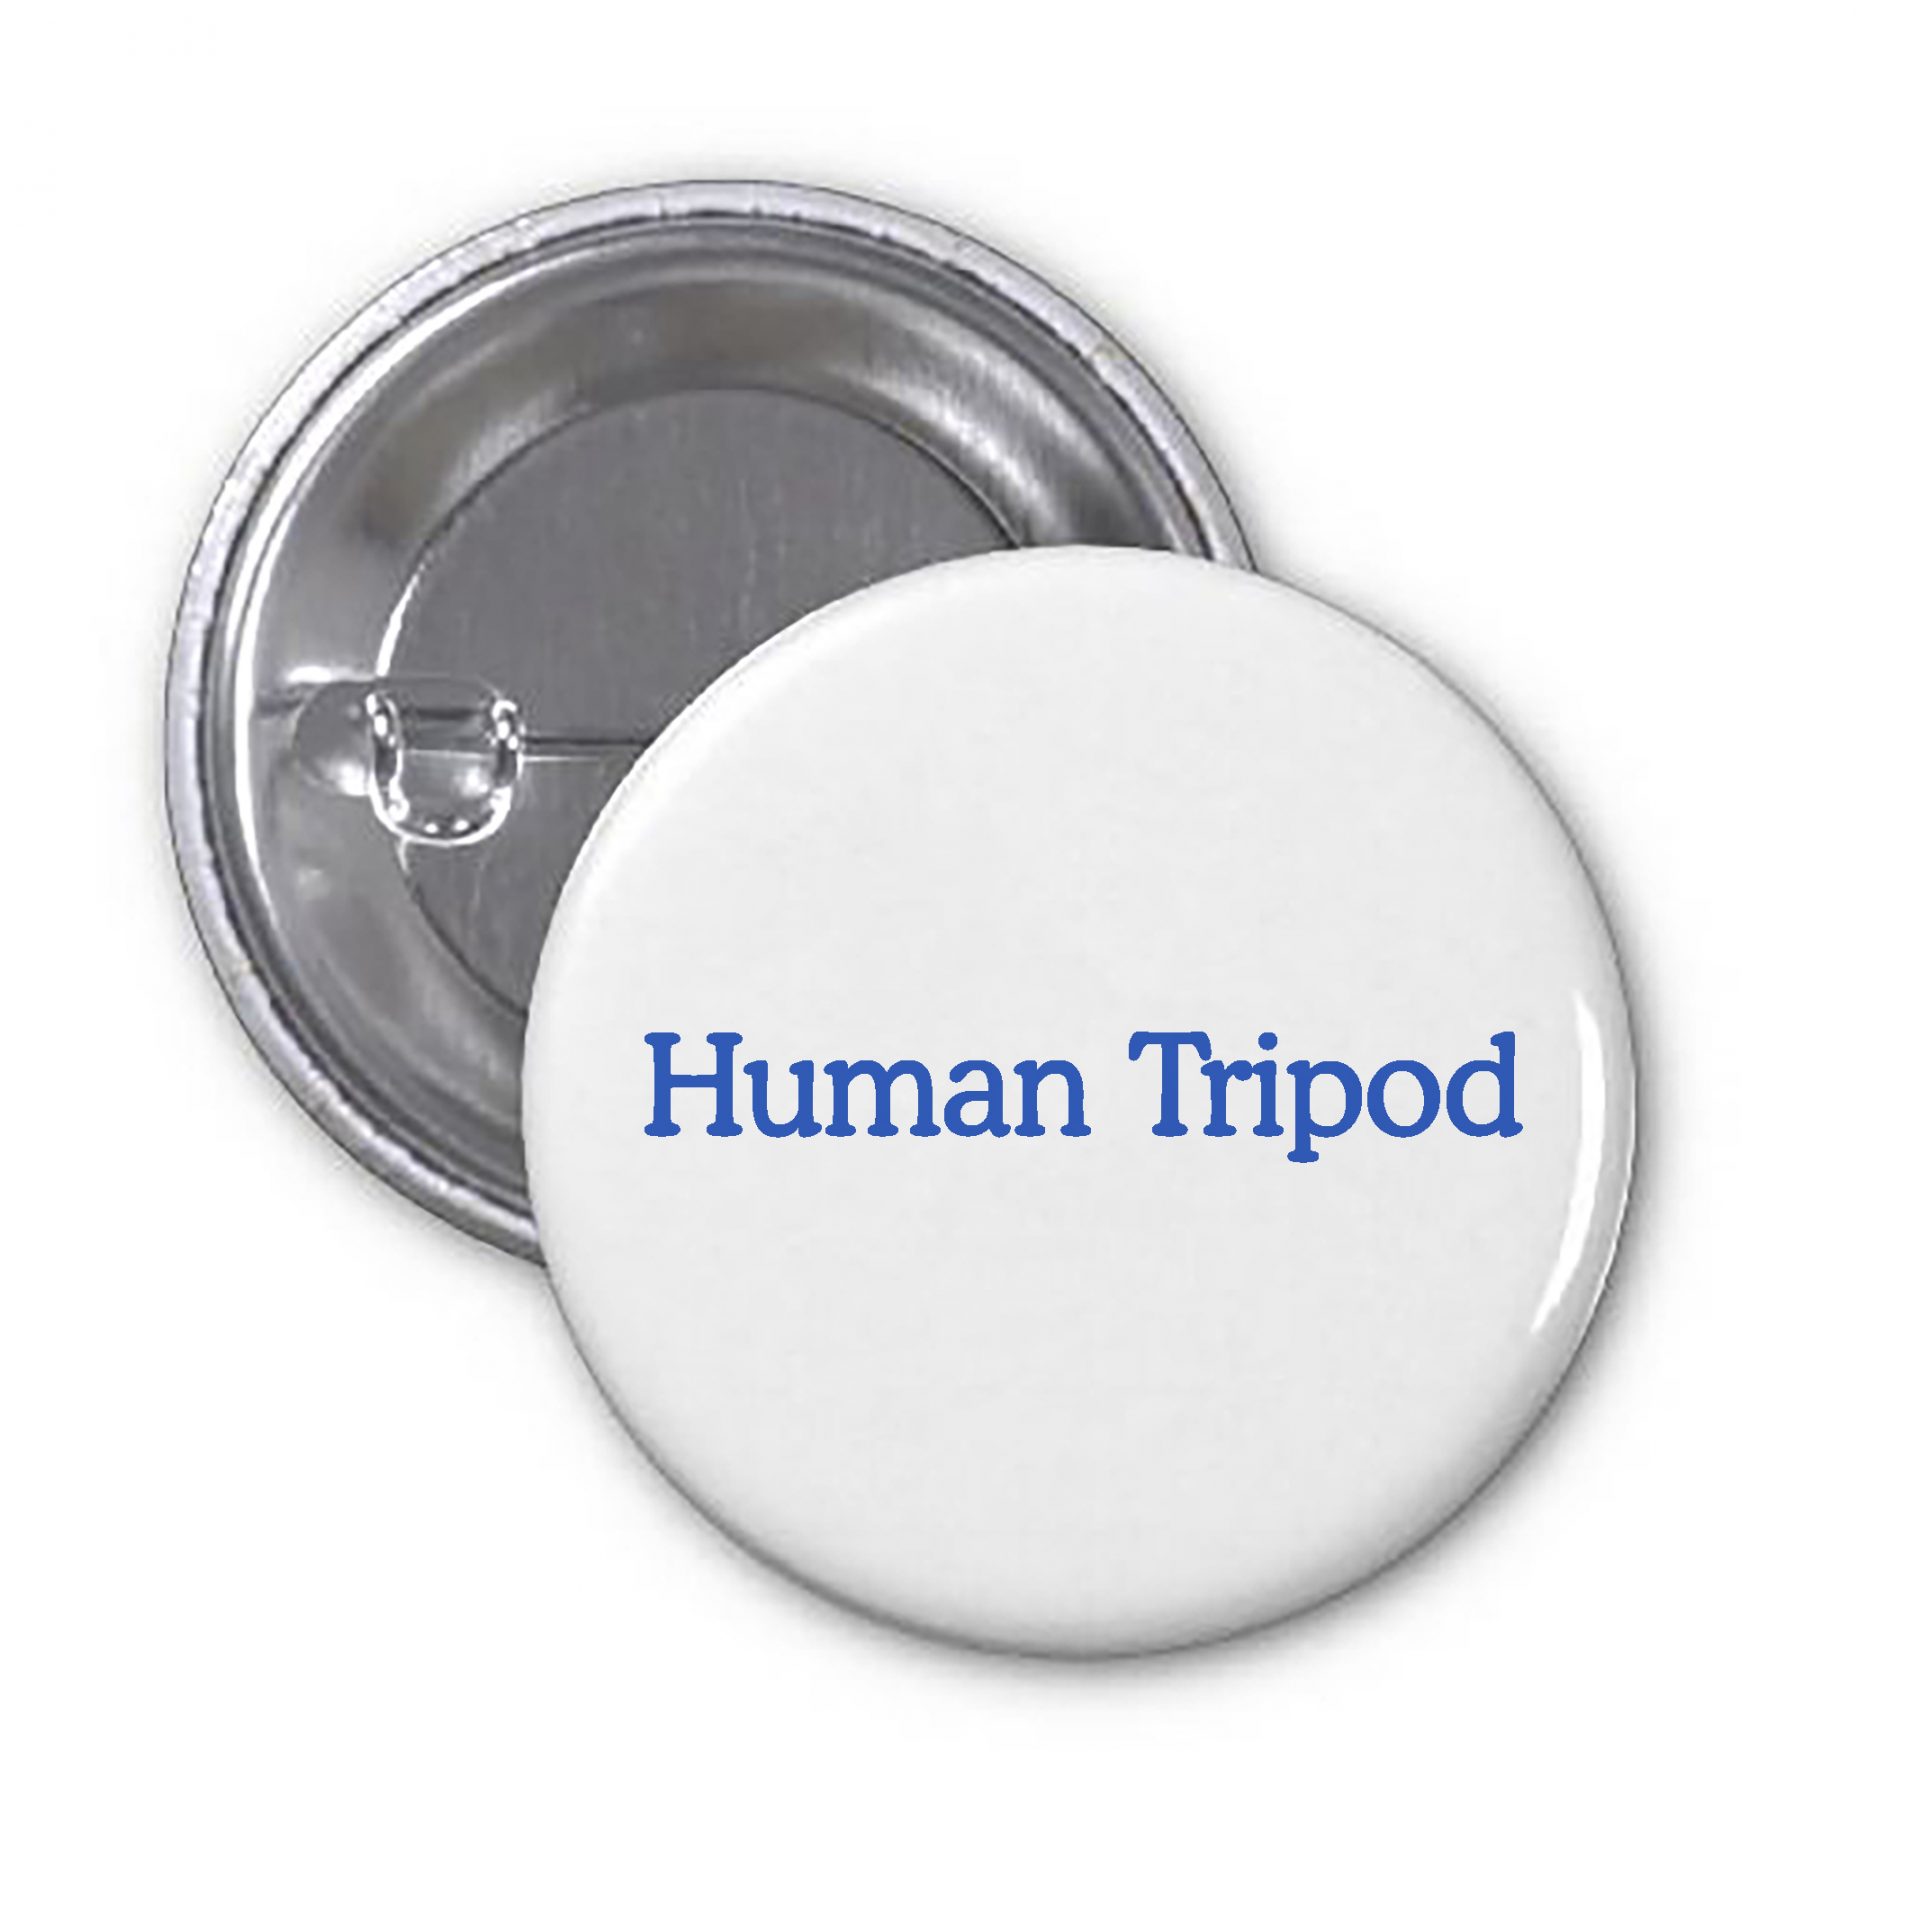 Human Tripod-1